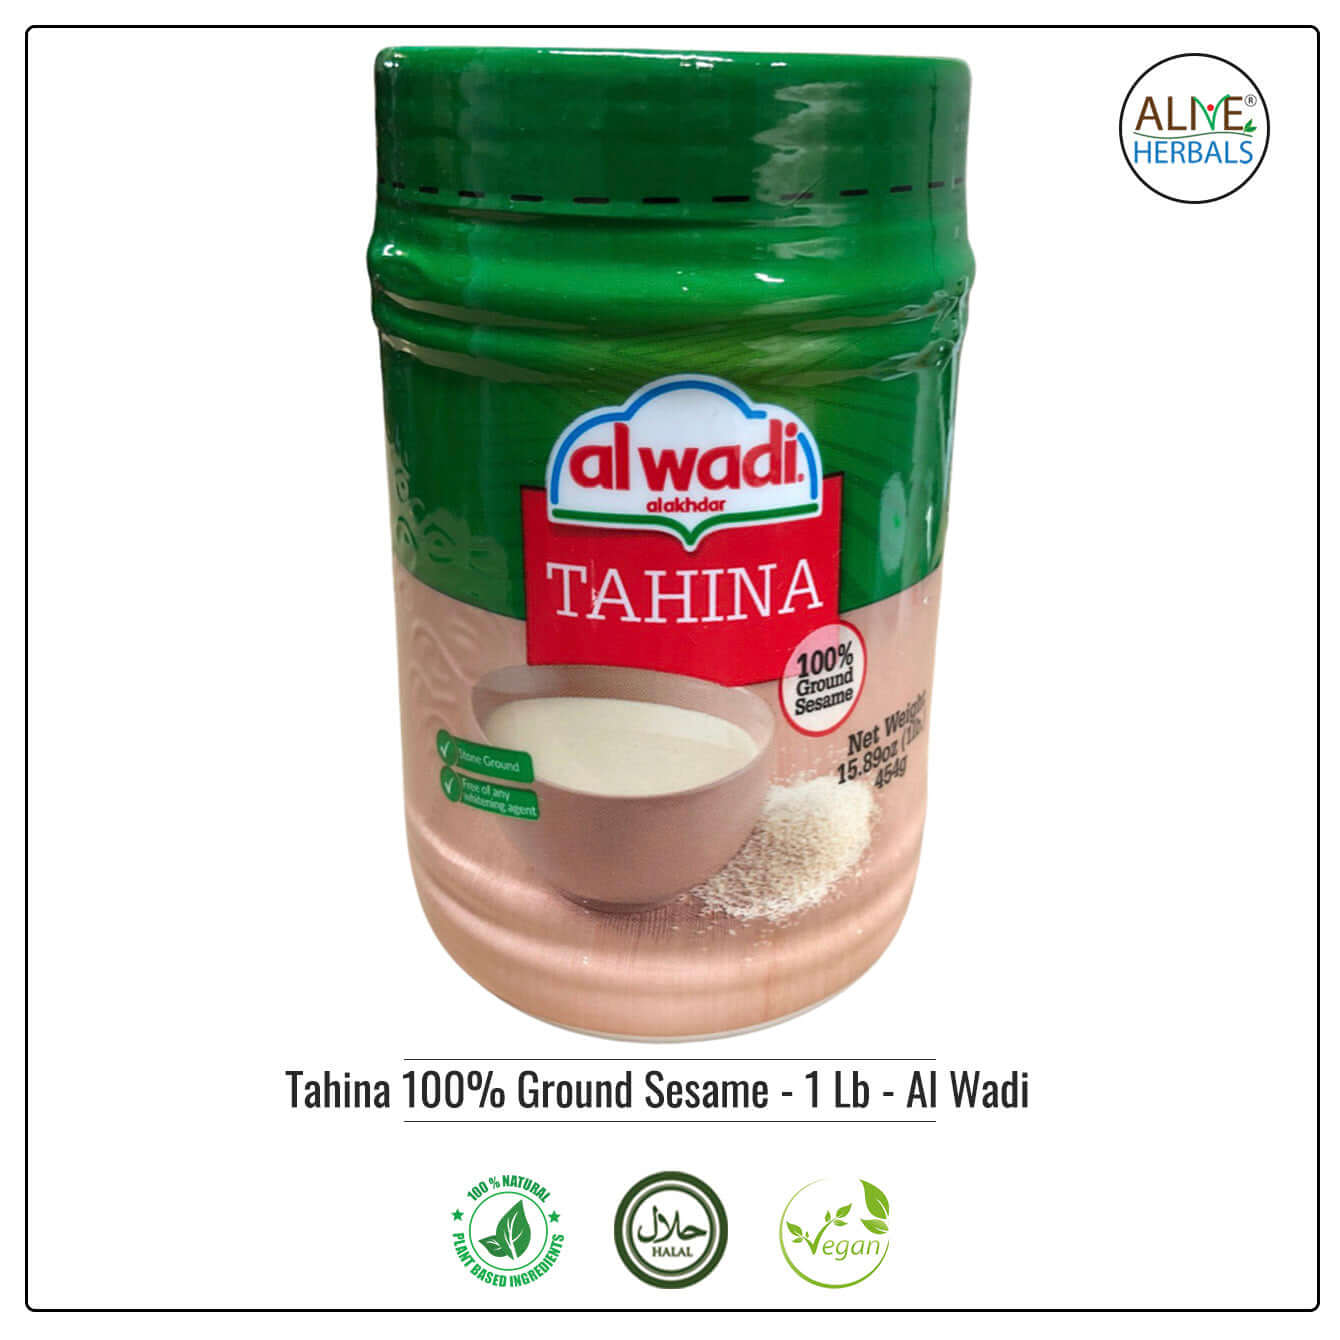 Tahina 100% Ground Sesame - Al Wadi - Buy at Natural Food Store | Alive Herbals.